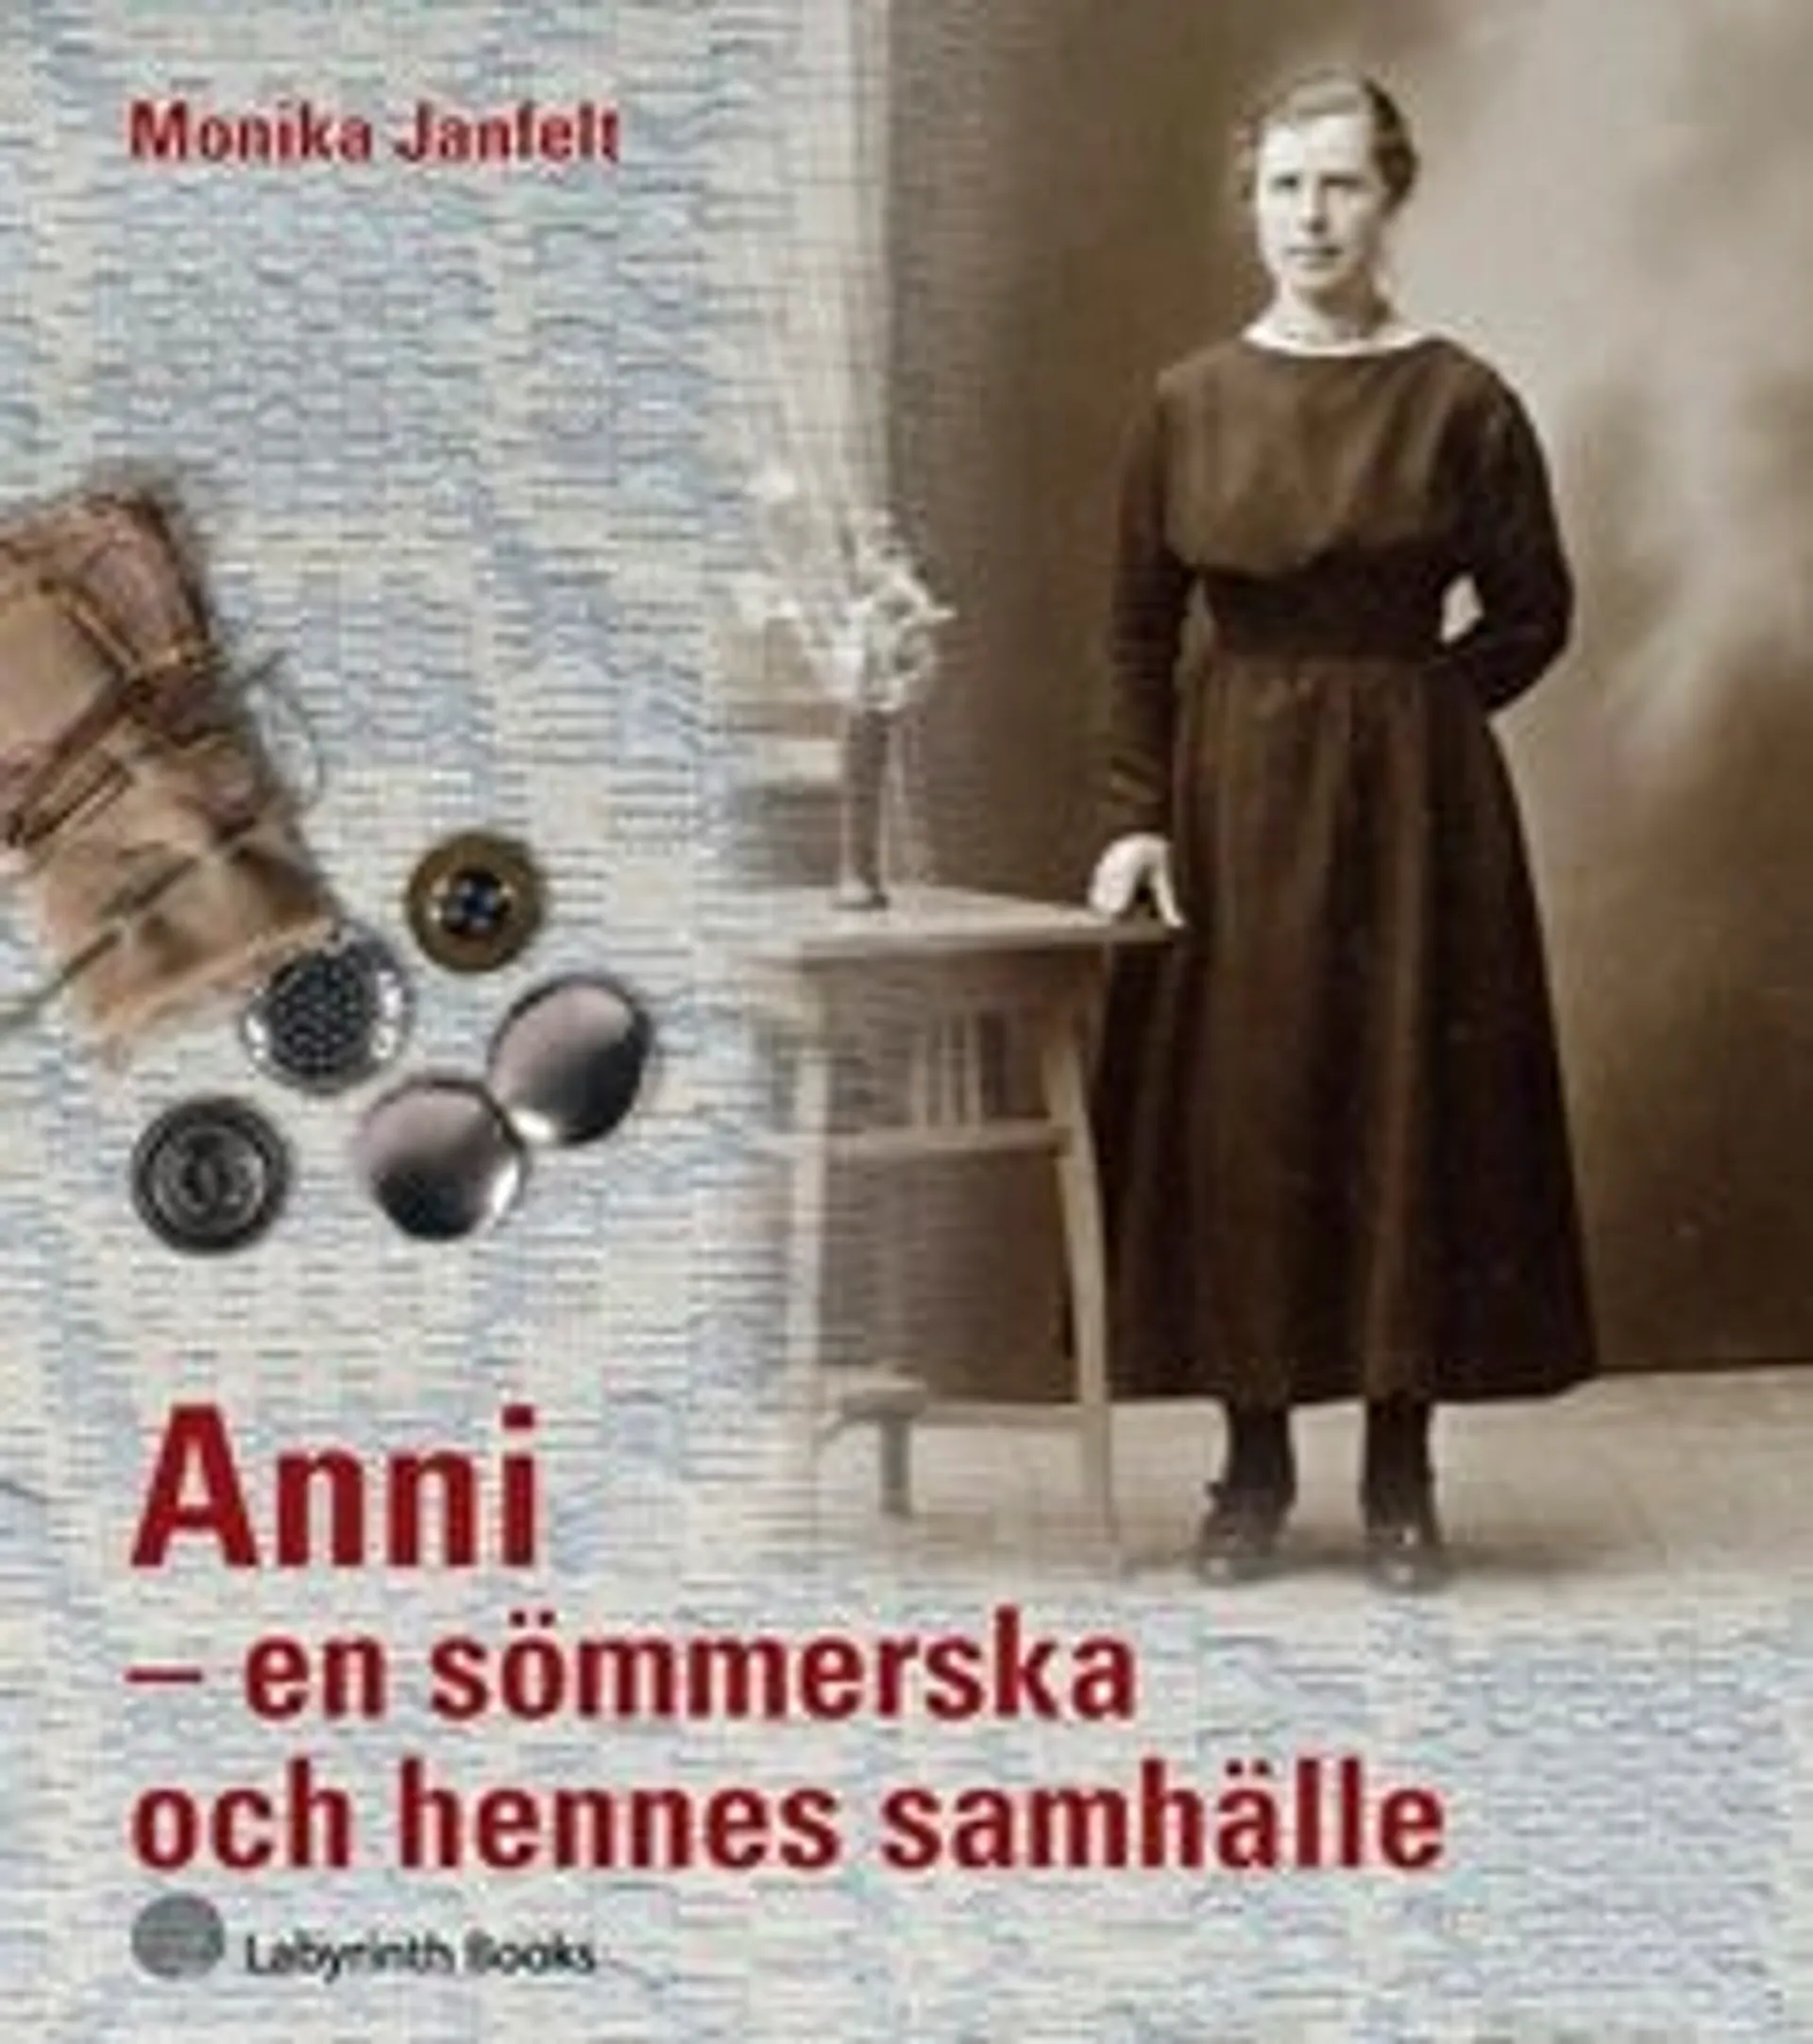 Janfelt, Anni - en sömmerska och hennes samhälle